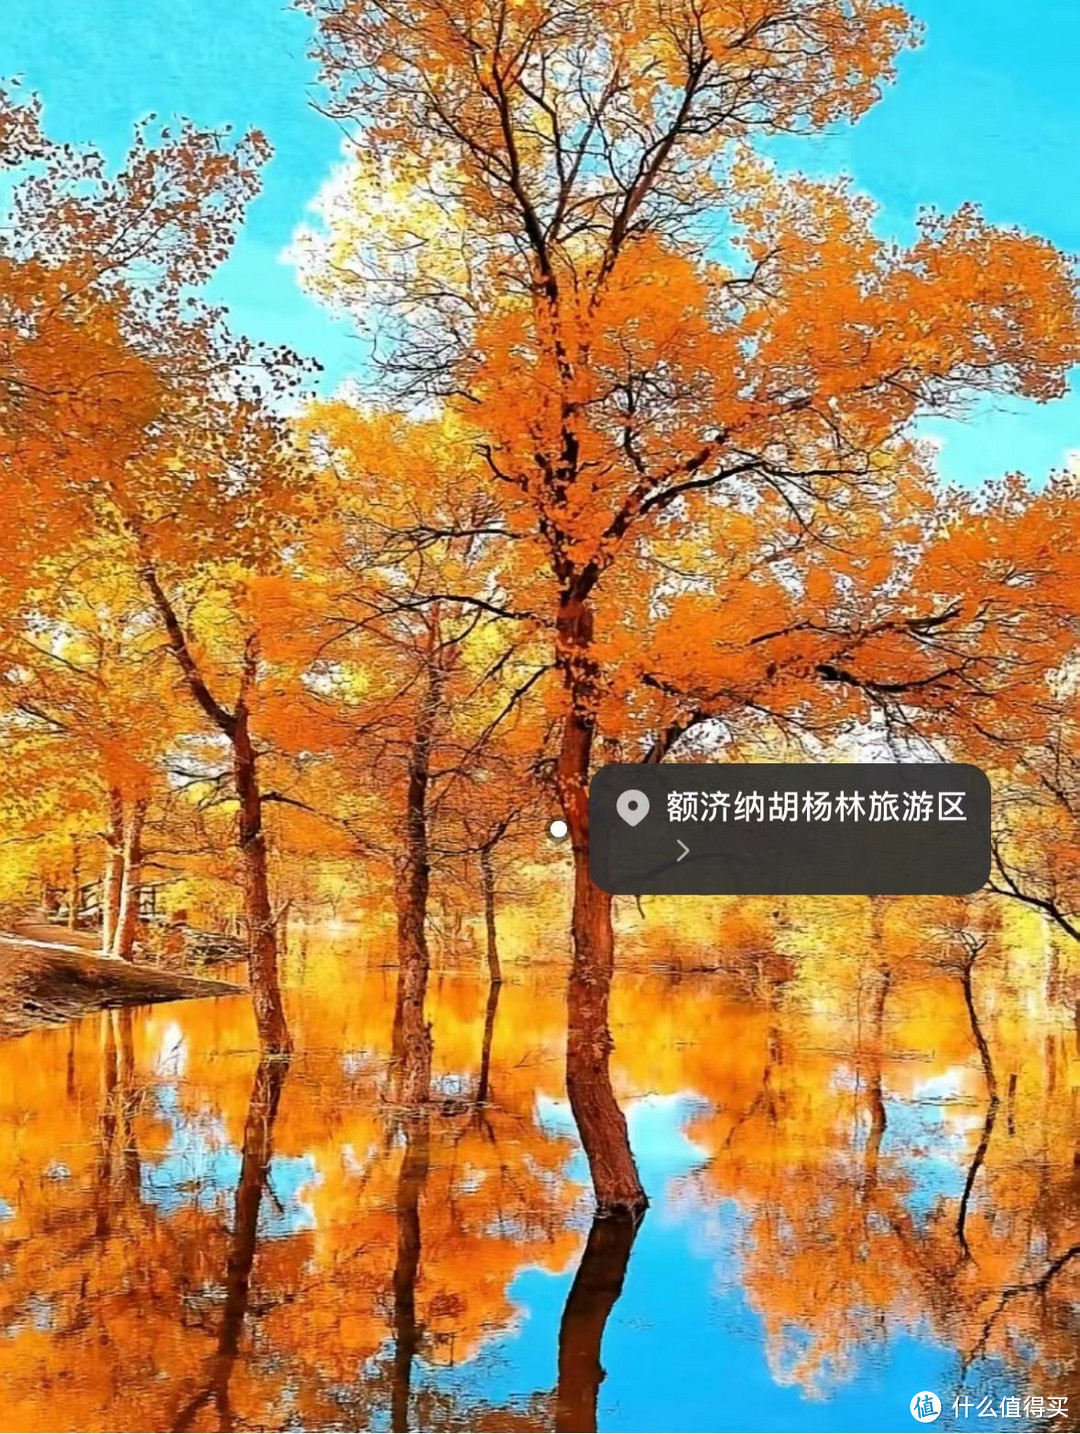 9-11月最美赏秋🍂旅游目的地推荐❗